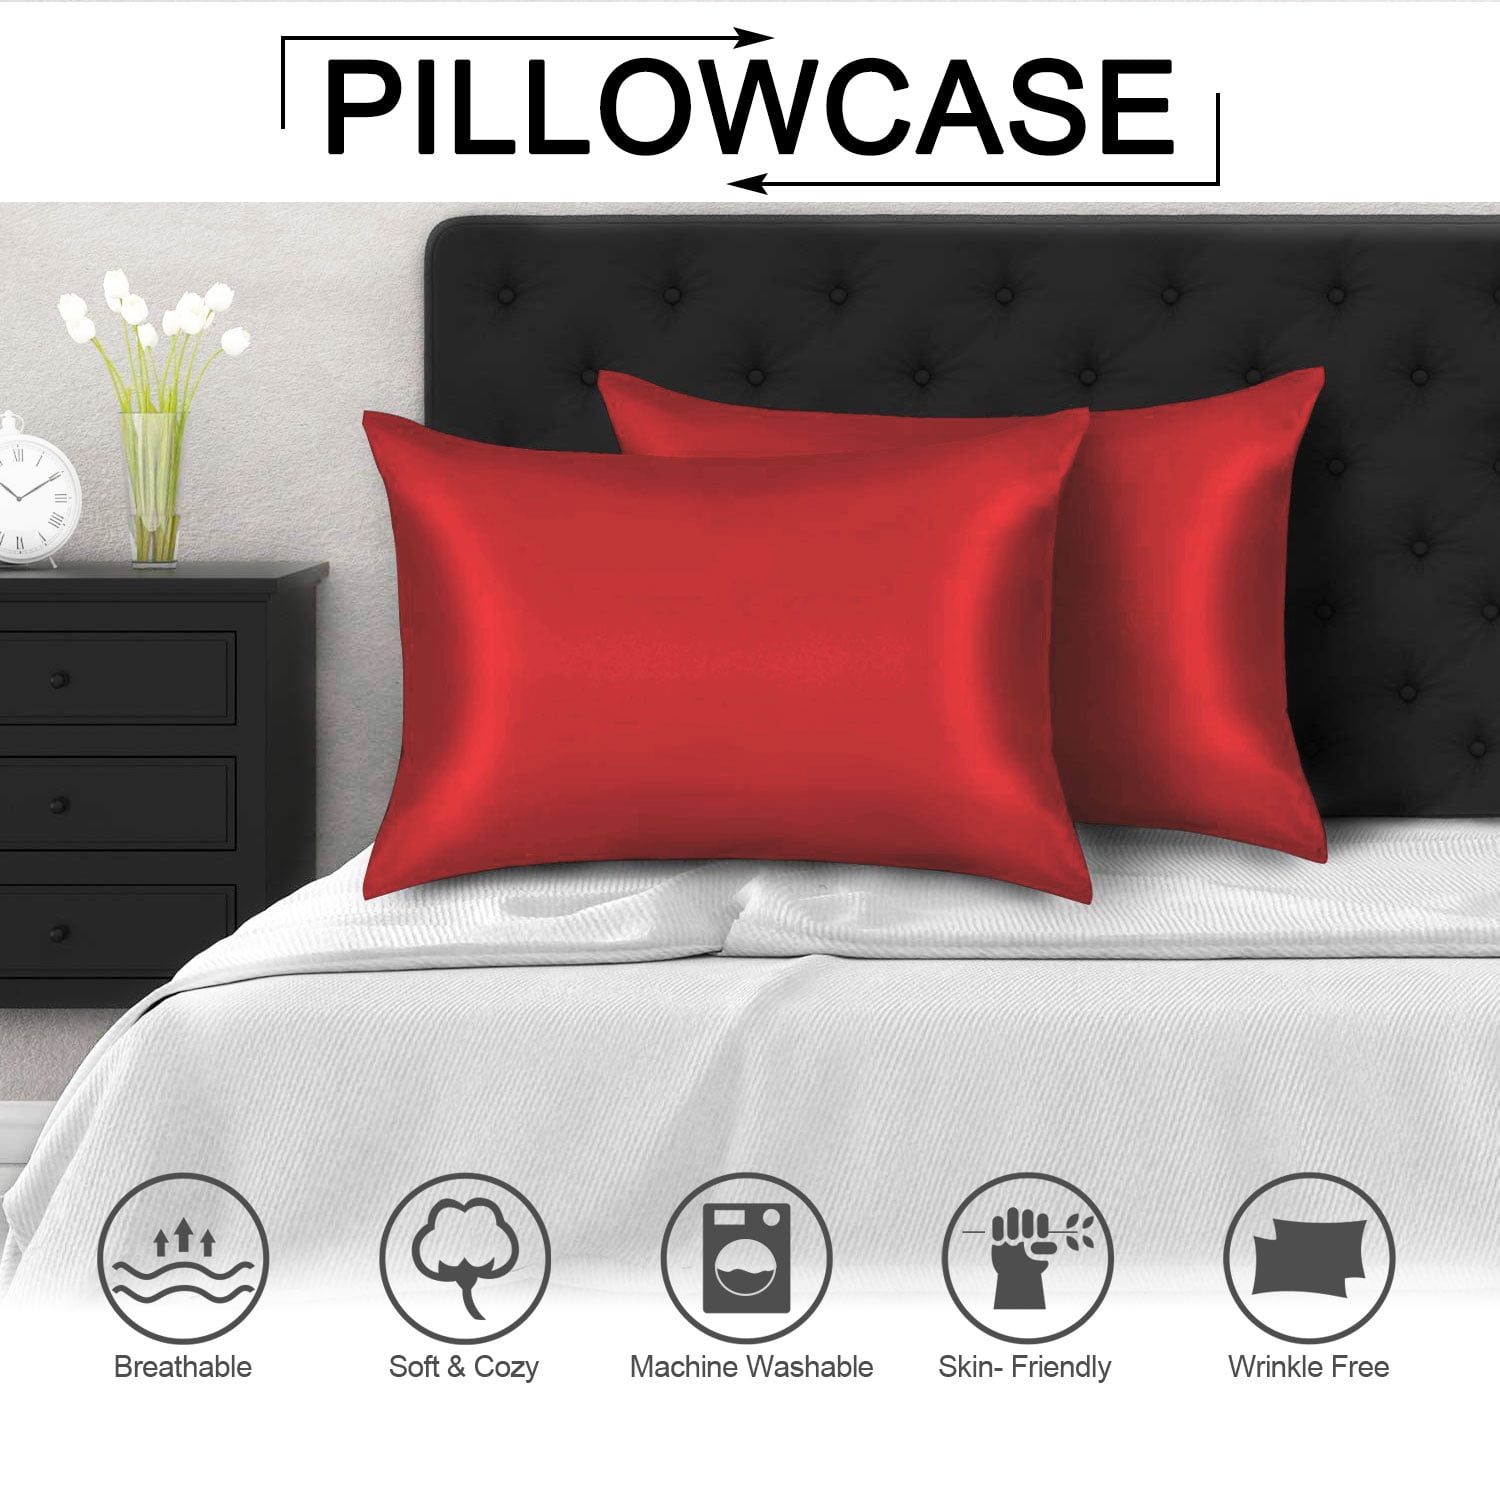 Details about   Kids Activity Pillow Sham Decorative Pillowcase 3 Sizes for Bedroom Decor 